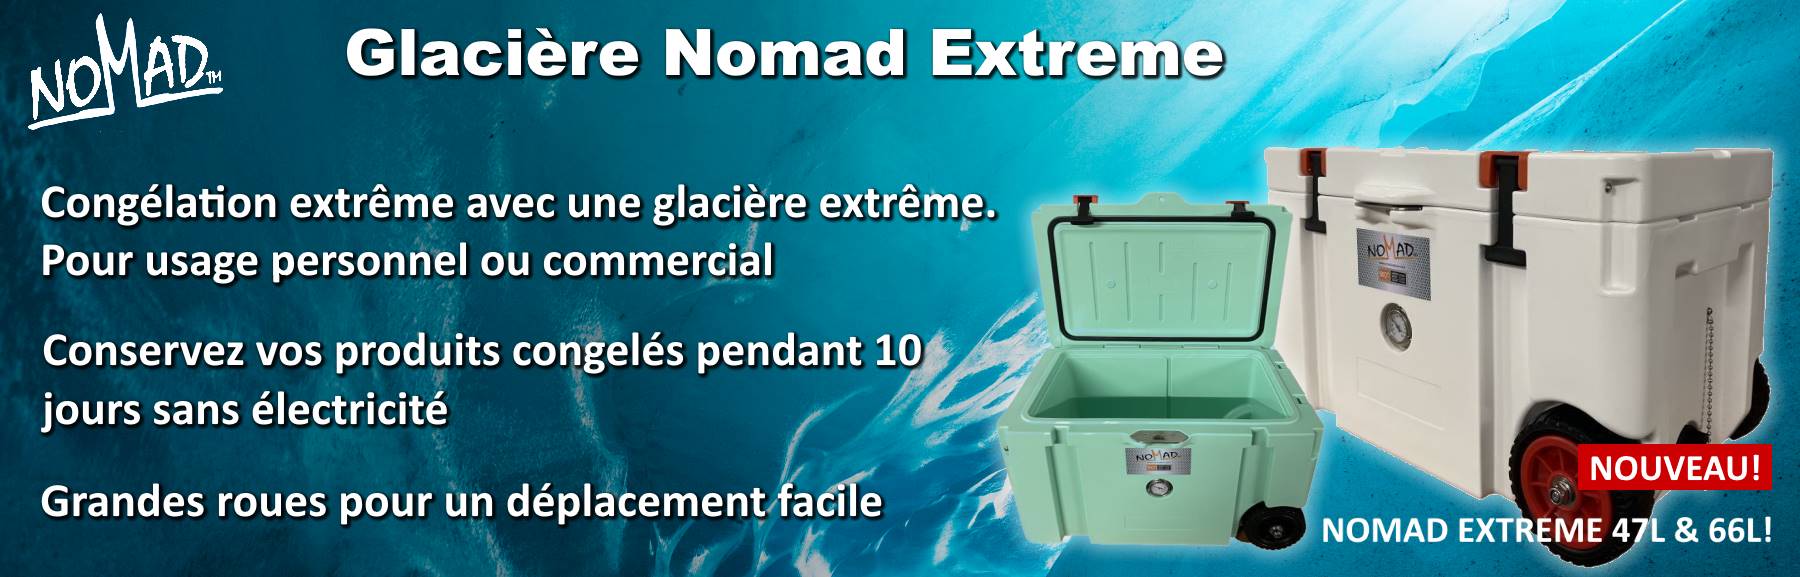 Glacière Nomad Extreme